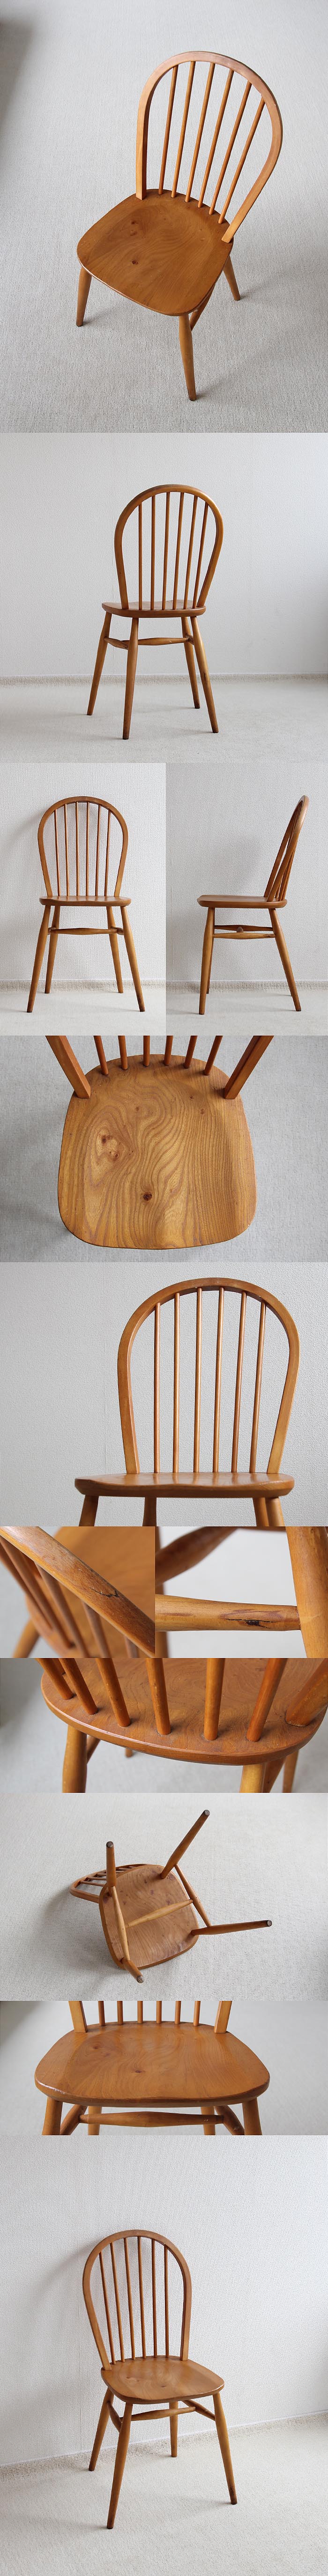 イギリス ヴィンテージ キッチンチェア 英国 木製椅子 家具「フープバックチェア」V-406